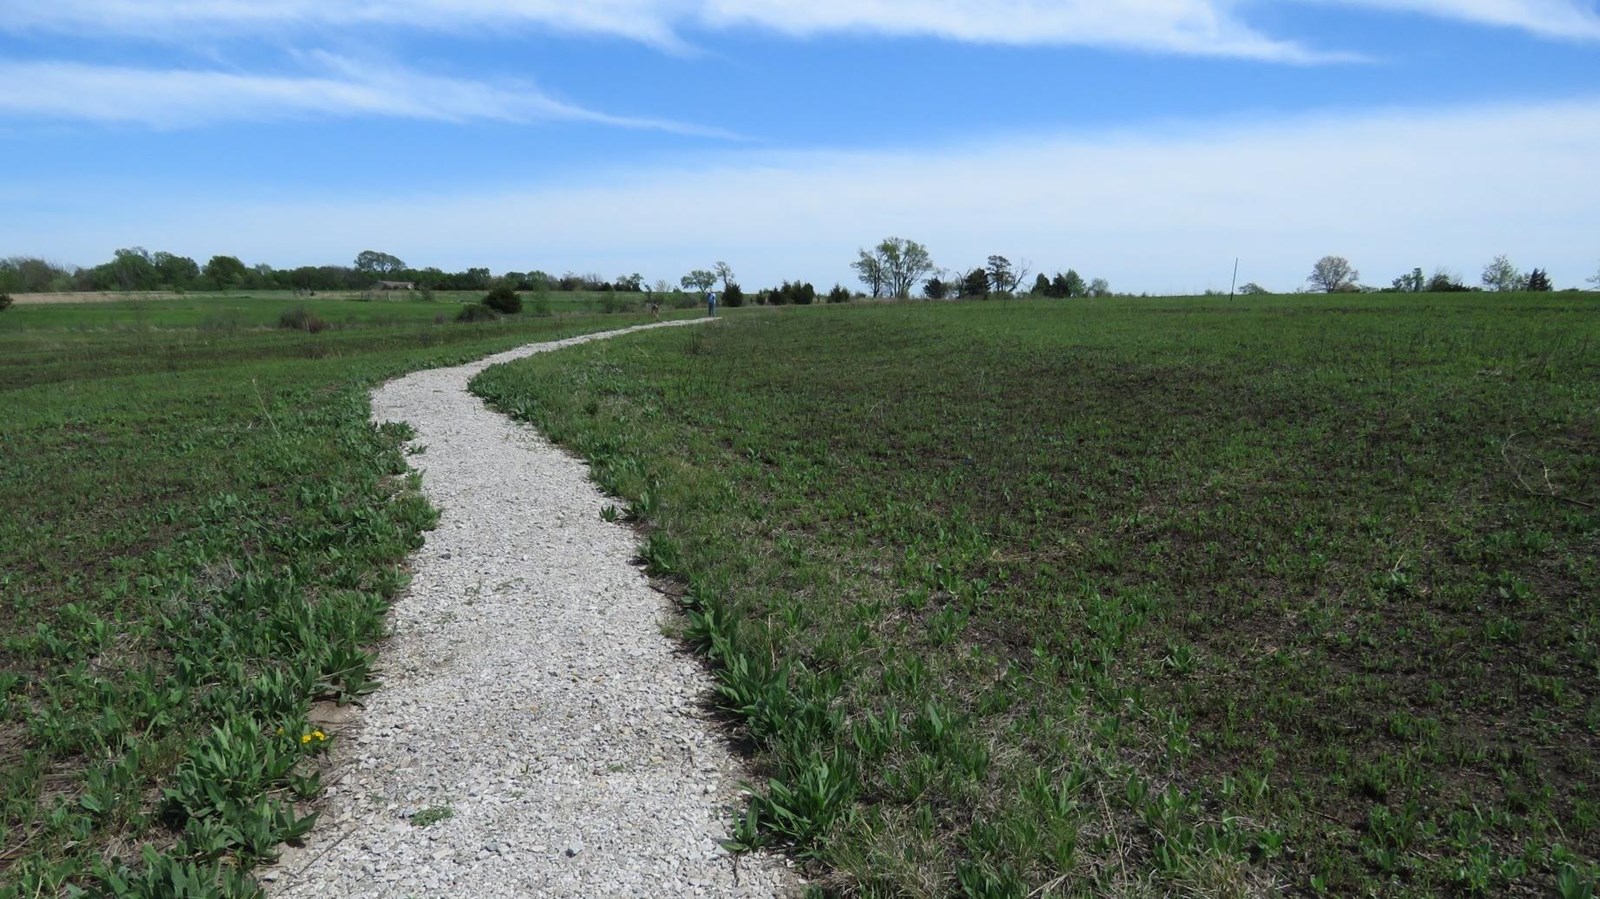 A stone path winds through a vast prairie.